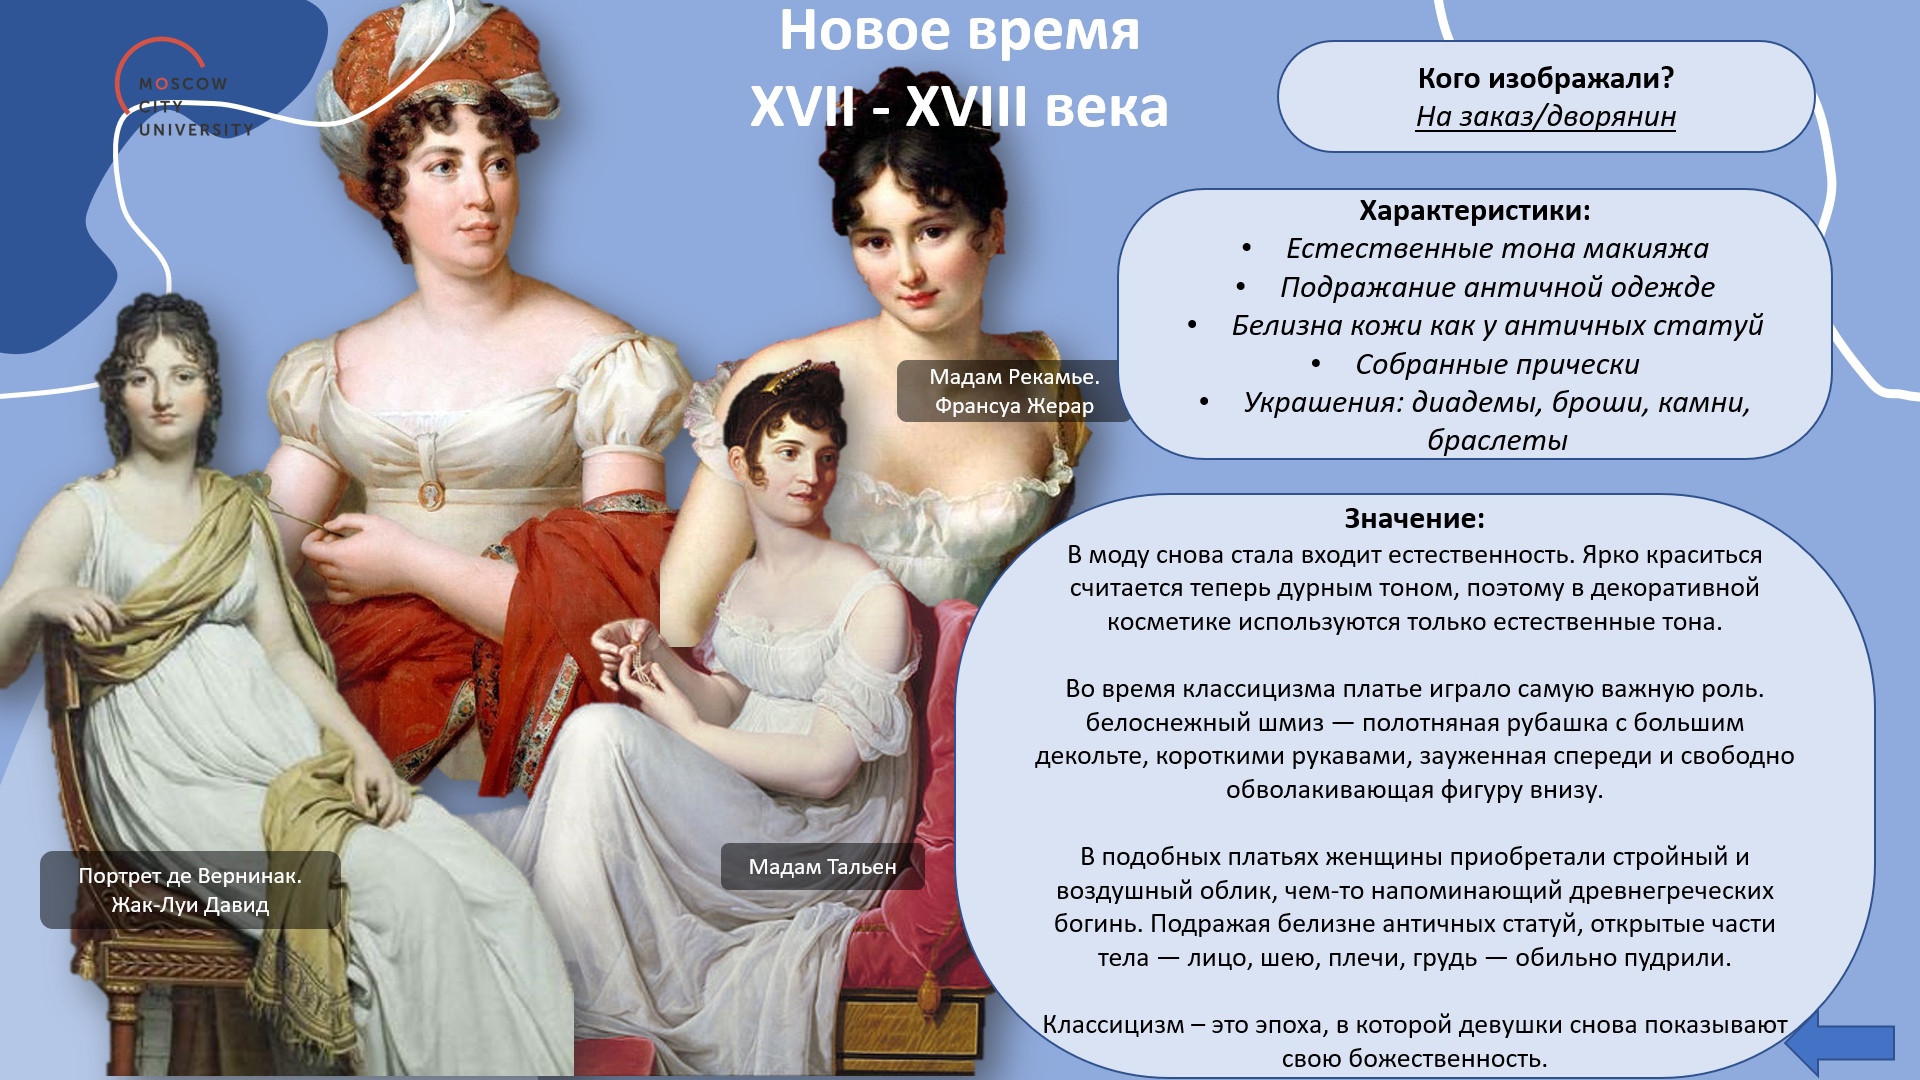 Образ женщины от Бояриновой и Гатиной4